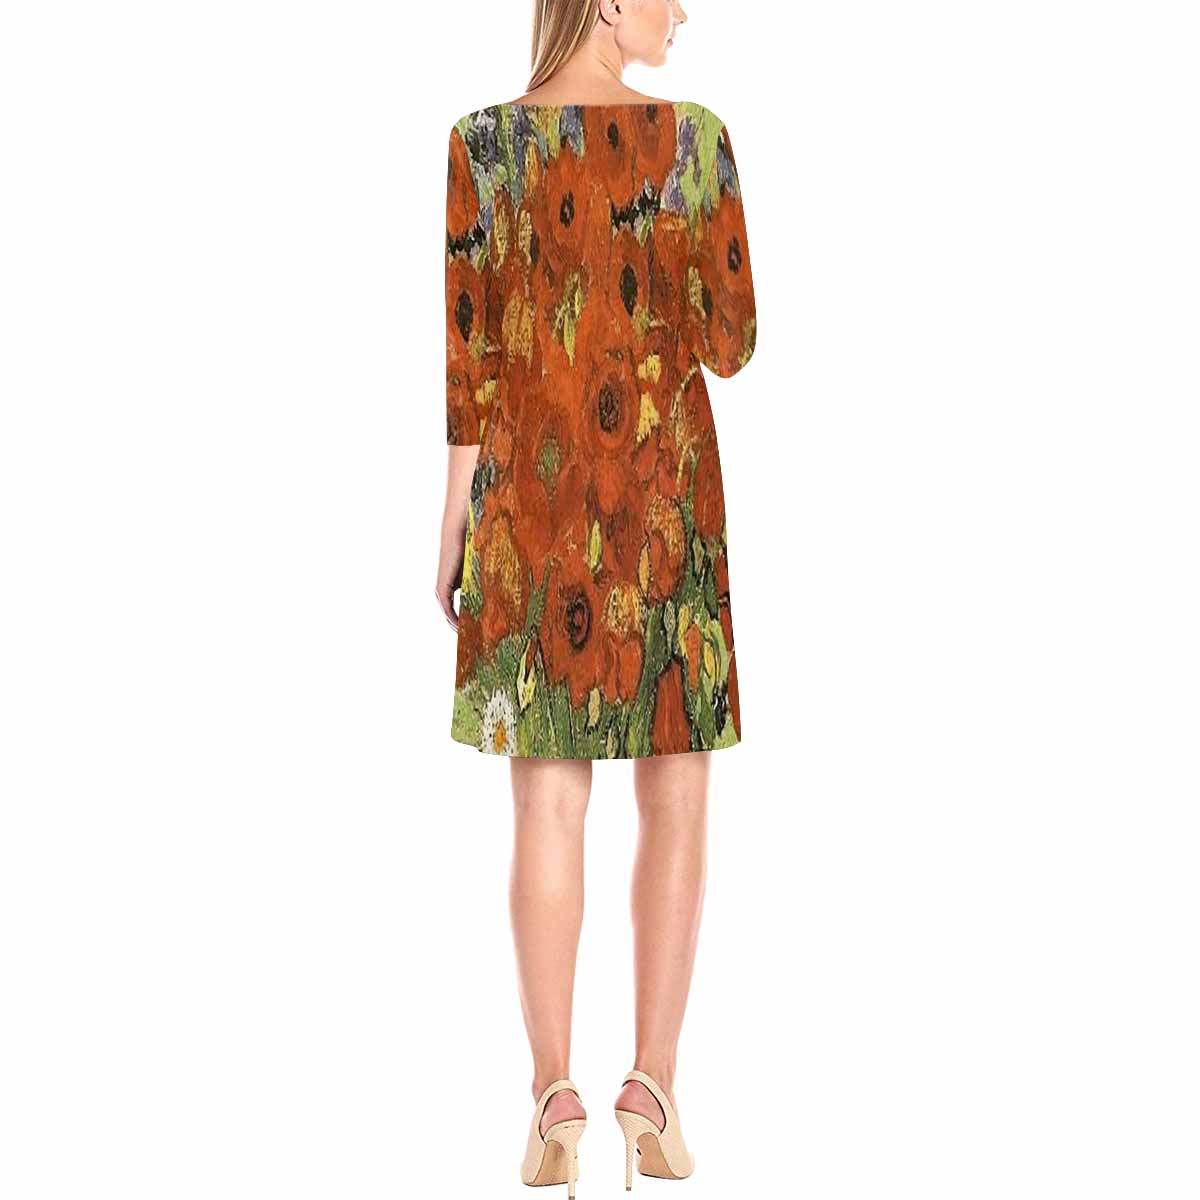 Vintage floral loose dress, XS to 3X plus size, model D29532 Design 56